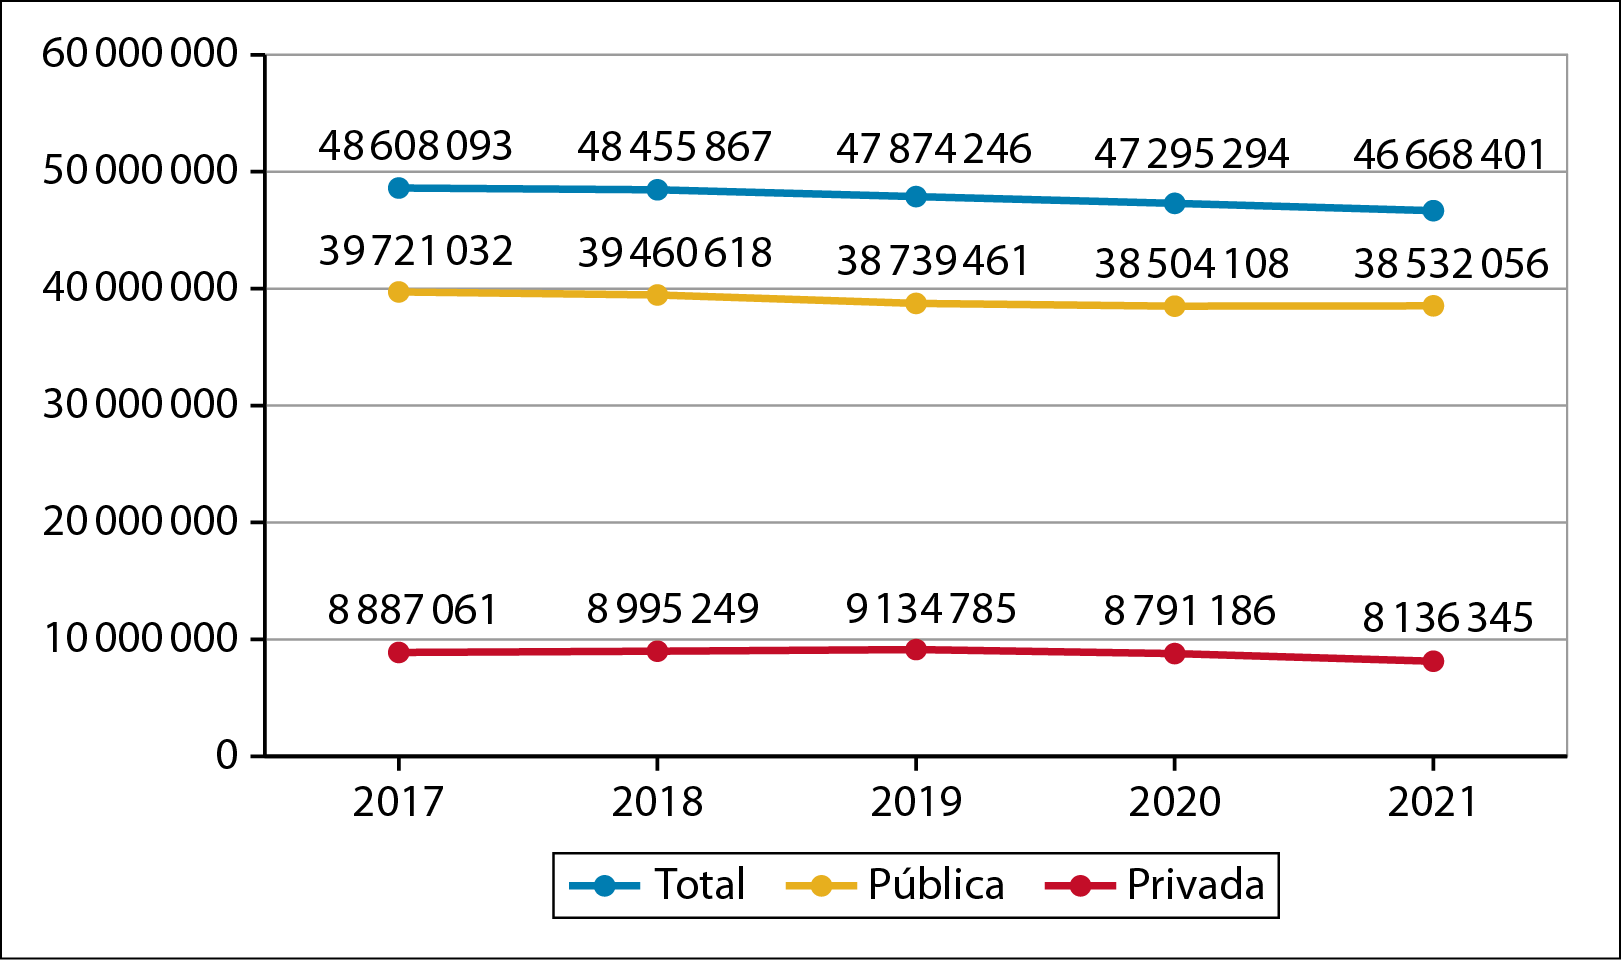 Gráfico em linhas na horizontal. Número de matrículas na educação básica, segundo a rede de ensino, entre 2017 e 2021. 
No eixo vertical, os números vão entre 10 e 60 milhões de matrículas. No eixo horizontal, aparecem os anos de 2017, 2018, 2019, 2020 e 2021. 
Na legenda, a linha em azul indica o  total de matrículas. A linha em amarelo indica as matrículas em escolas públicas e, em vermelho, as matrículas em escolas privadas.
Total: 
Em 2017, houve 48.608.093 matrículas na Educação Básica. Em 2018, houve  48.455.867 matrículas na Educação Básica. Em 2019, houve 47.874.246 matrículas na Educação Básica. Em 2020:, houve 47.295.294 matrículas na Educação Básica. Em 2021, houve 46.668.401 matrículas na Educação Básica.
Em relação às matrículas em escolas públicas, em 2017, houve 39.721.032 de matrículas. Em 2018, o número era de 39.460.618 crianças matriculadas. Em 2019, 38.739.461; em 2020, 38.504.108  e, em 2021, 38.532.056.
Em relação às matrículas na rede privada de ensino, em 2017, houve 8.887.061 matrículas; em 2018, 8.995.249; em 2019, 9.134.785; em 2020, 8.791.186 e, em 2021, houve 8.136.345 matrículas.